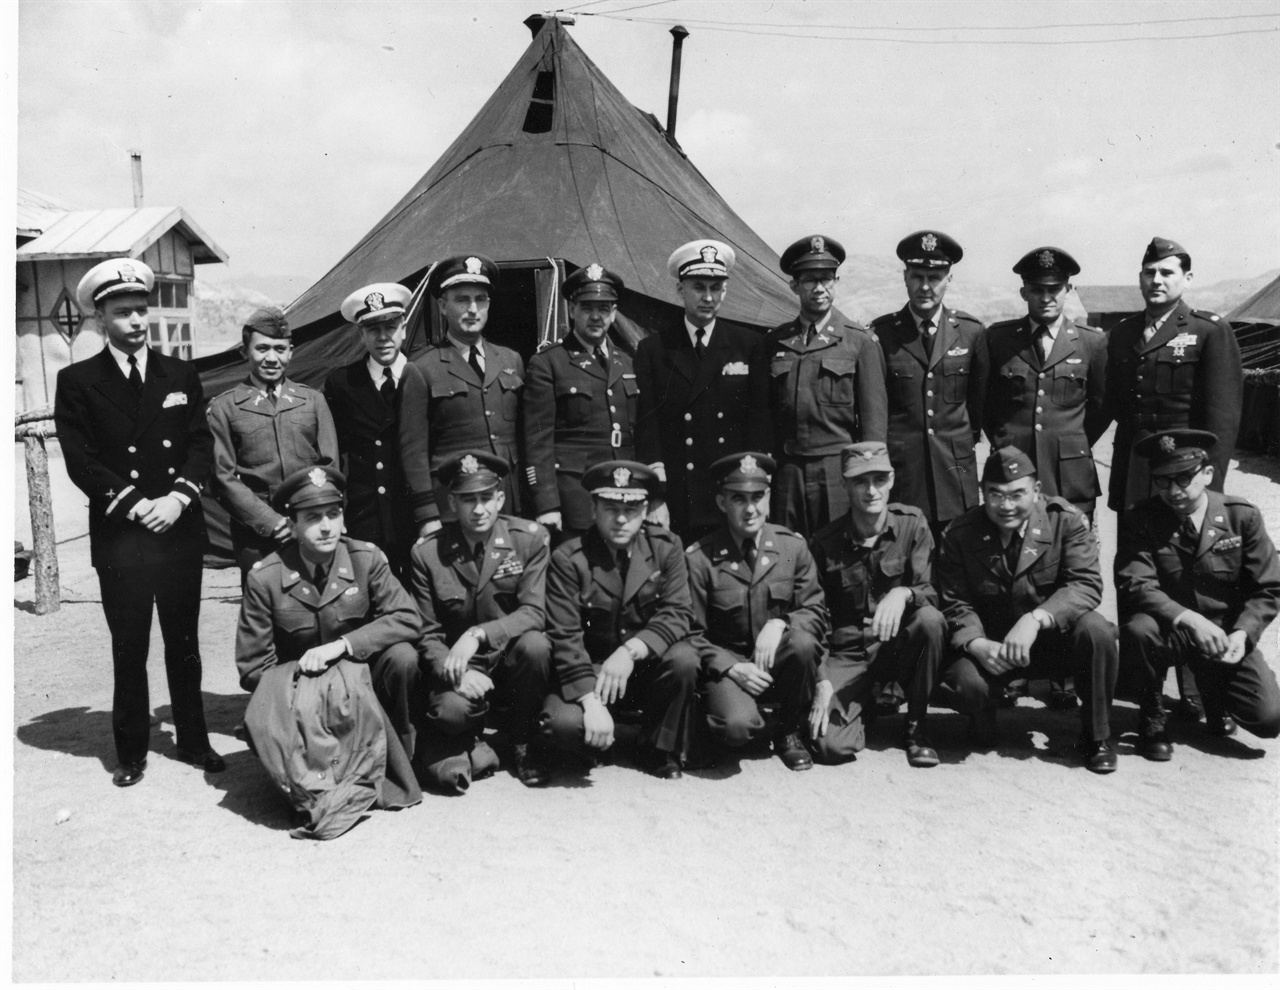  1953. 7. 7. 판문점, 유엔군 측 해리슨 대표(뒷줄 오른쪽에서 다섯 번째)를 비롯한 연락장교 일동.